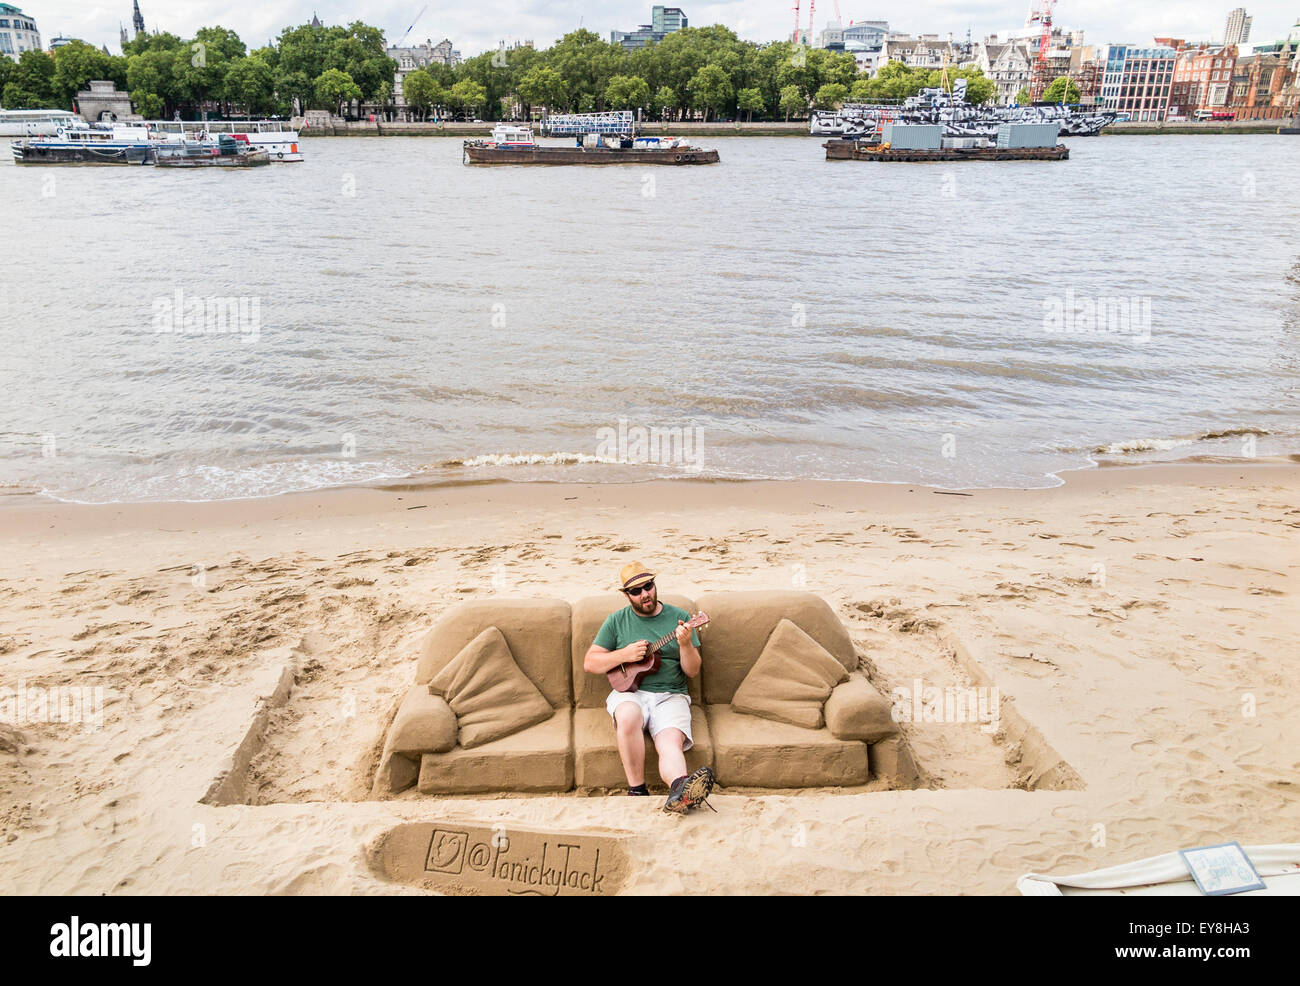 Scultore di sabbia, rendendo le sculture per suggerimenti, suonando una chitarra su un divano di sabbia, South Bank del terrapieno, London, Regno Unito Foto Stock